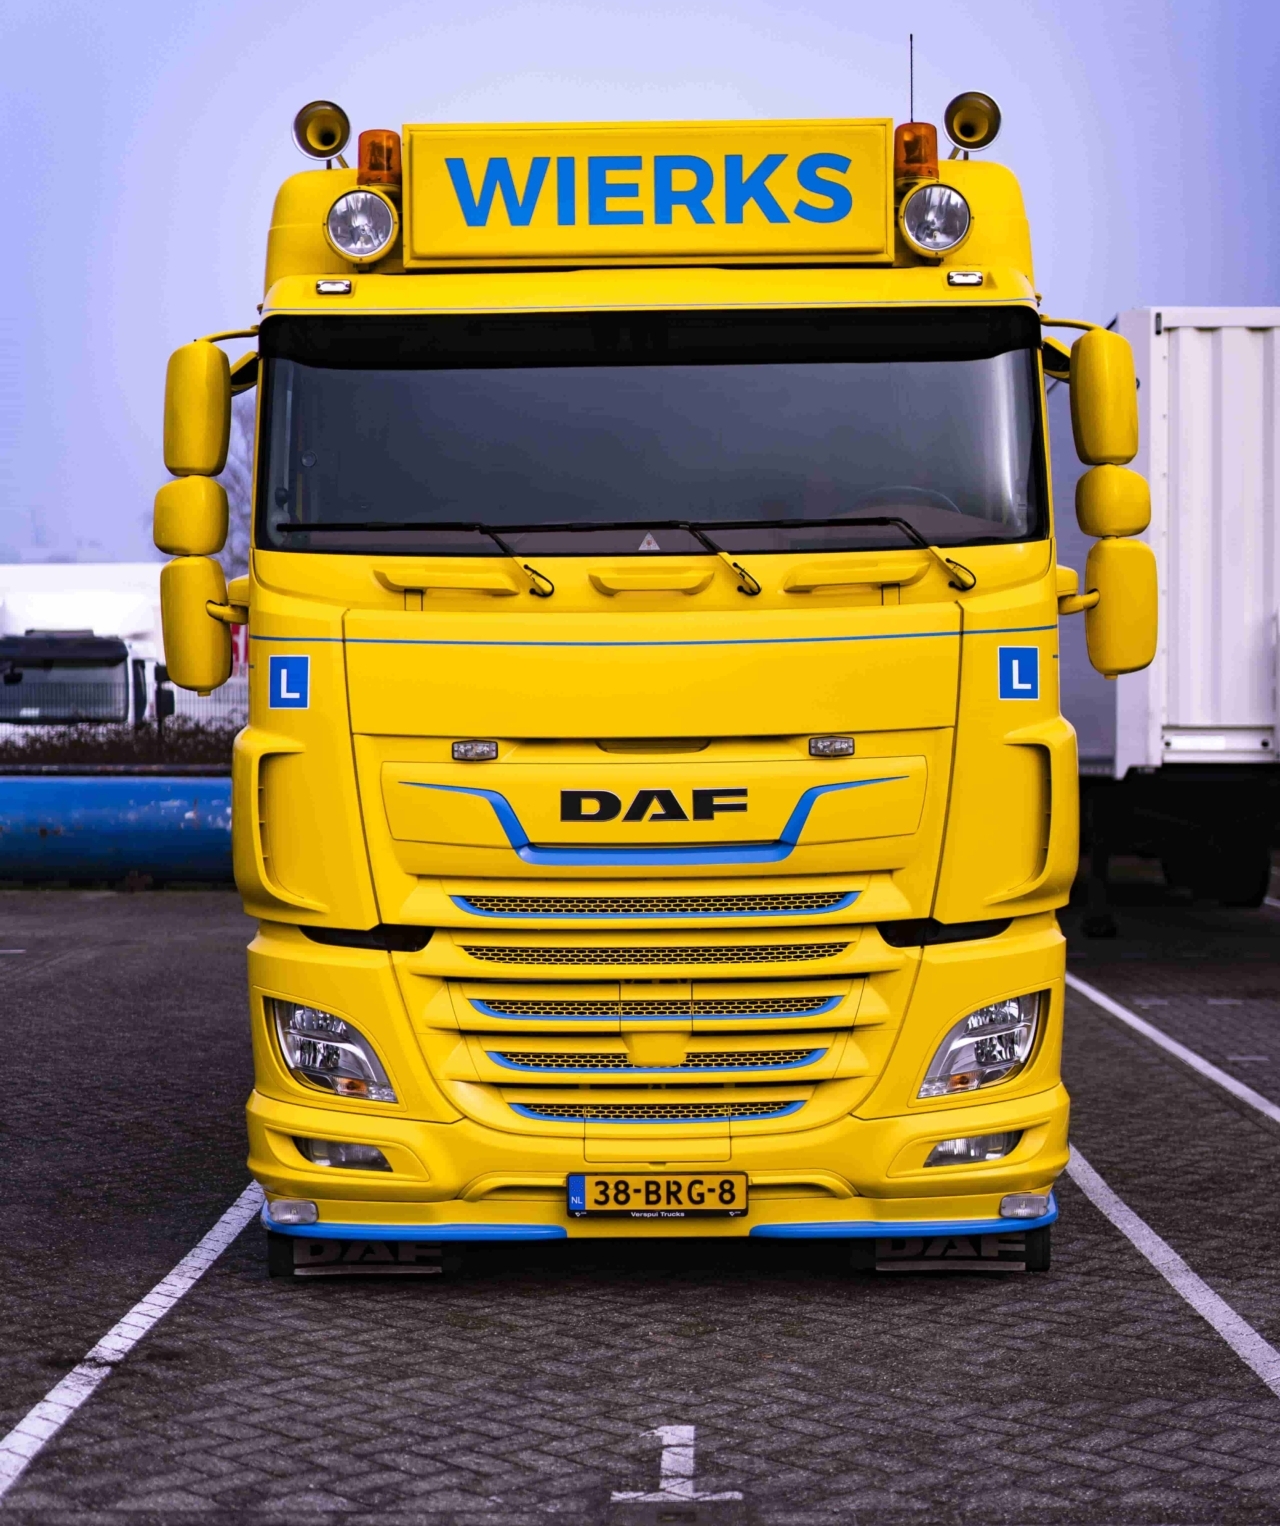 Wierks DAF vrachtwagen voorkant geel